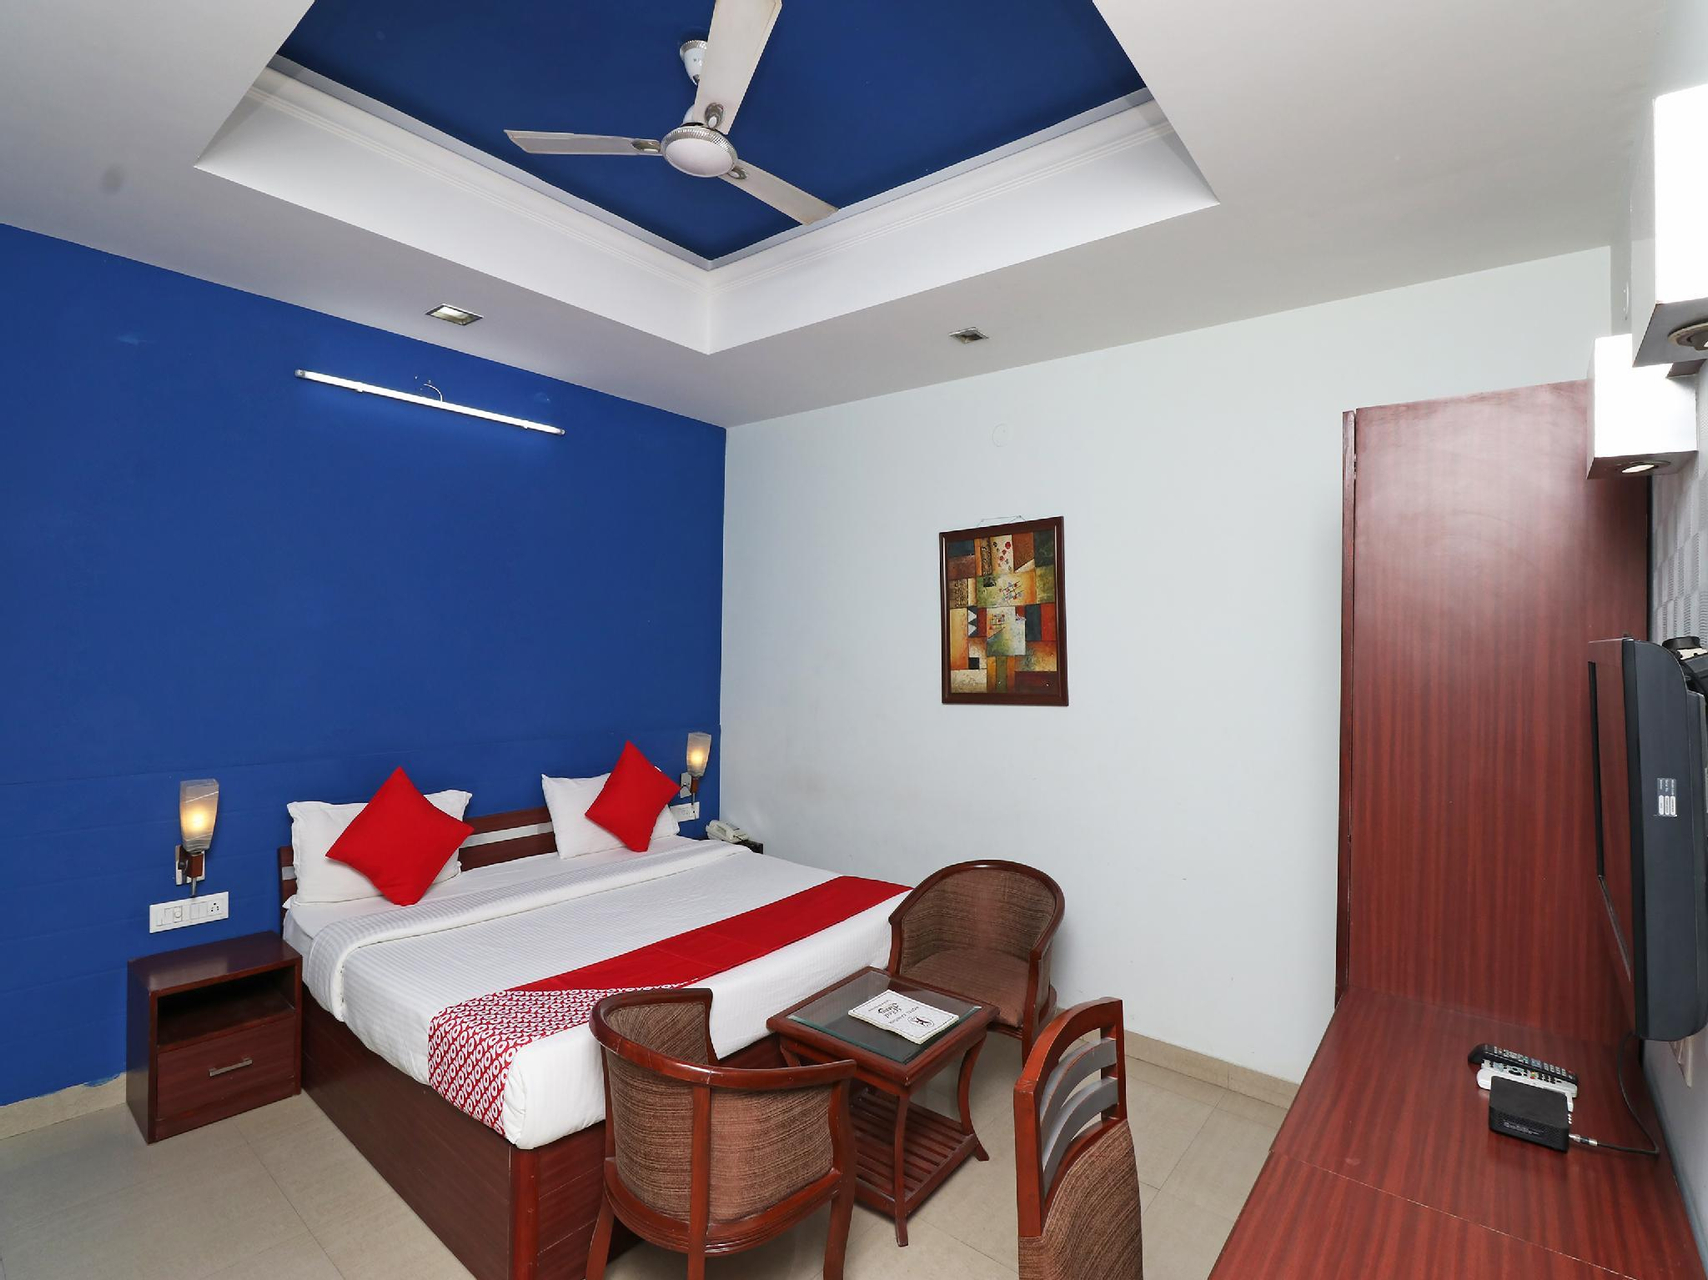 Bedroom 1, OYO 30119 Hotel Kanishk, Rewari